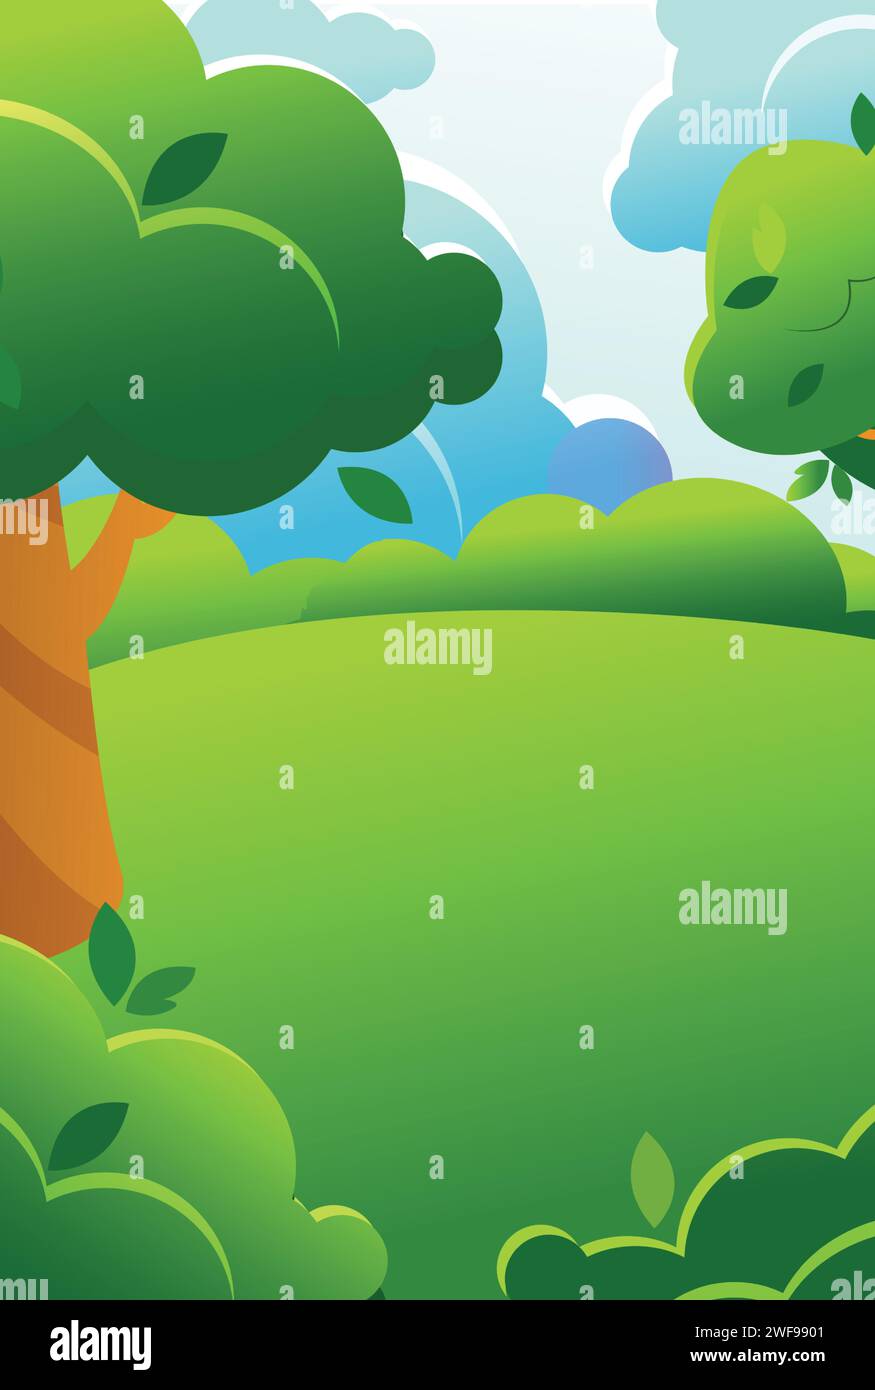 Grüne Sommer- oder Frühlingslandschaft im Cartoon-Stil. Wald- oder Parkwiese mit Bäumen, Büschen und Wolken. Vertikale Abbildung. Stock Vektor